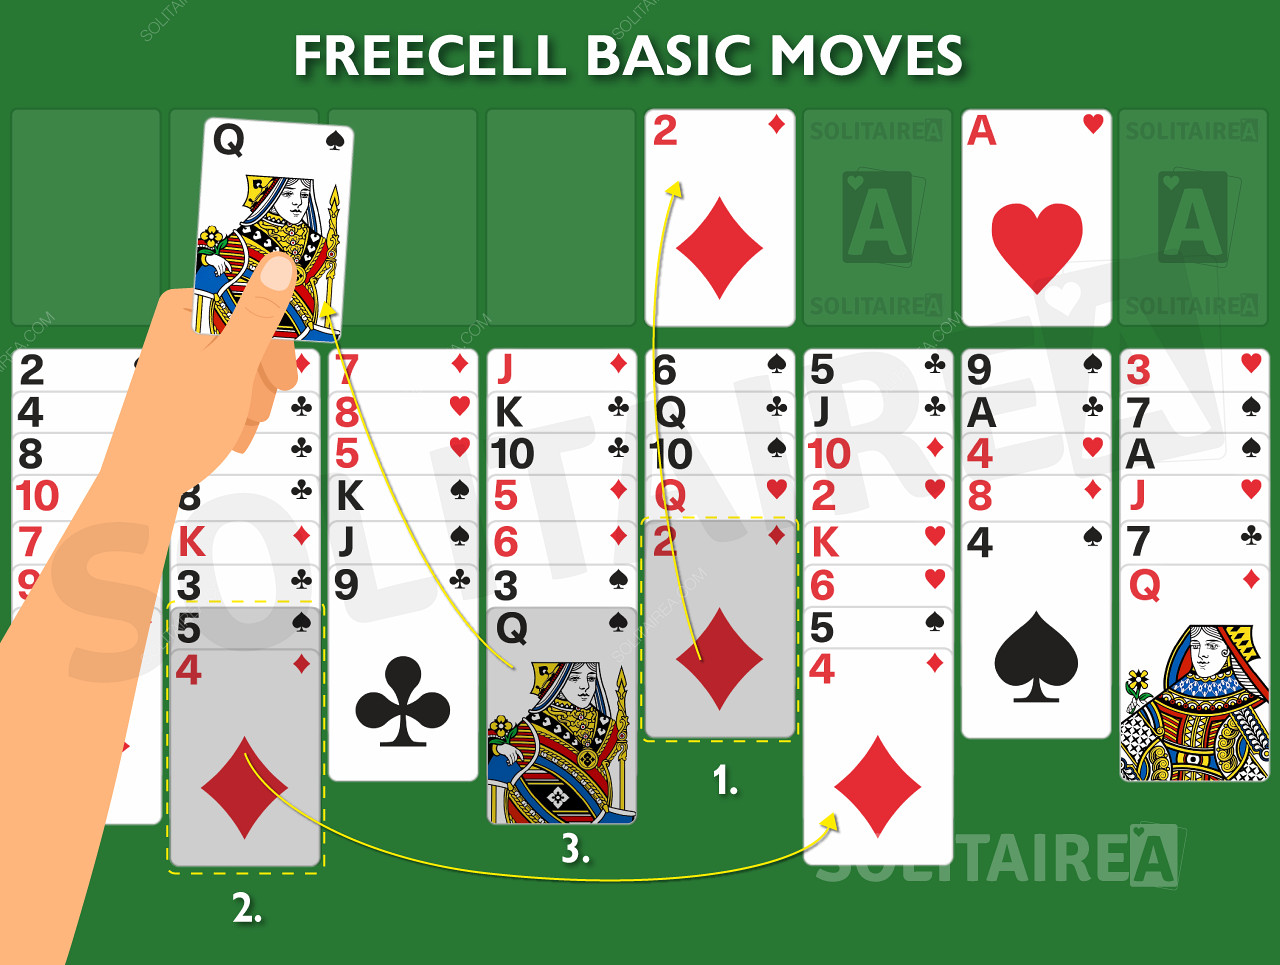 Image de jeu montrant les règles de base en action